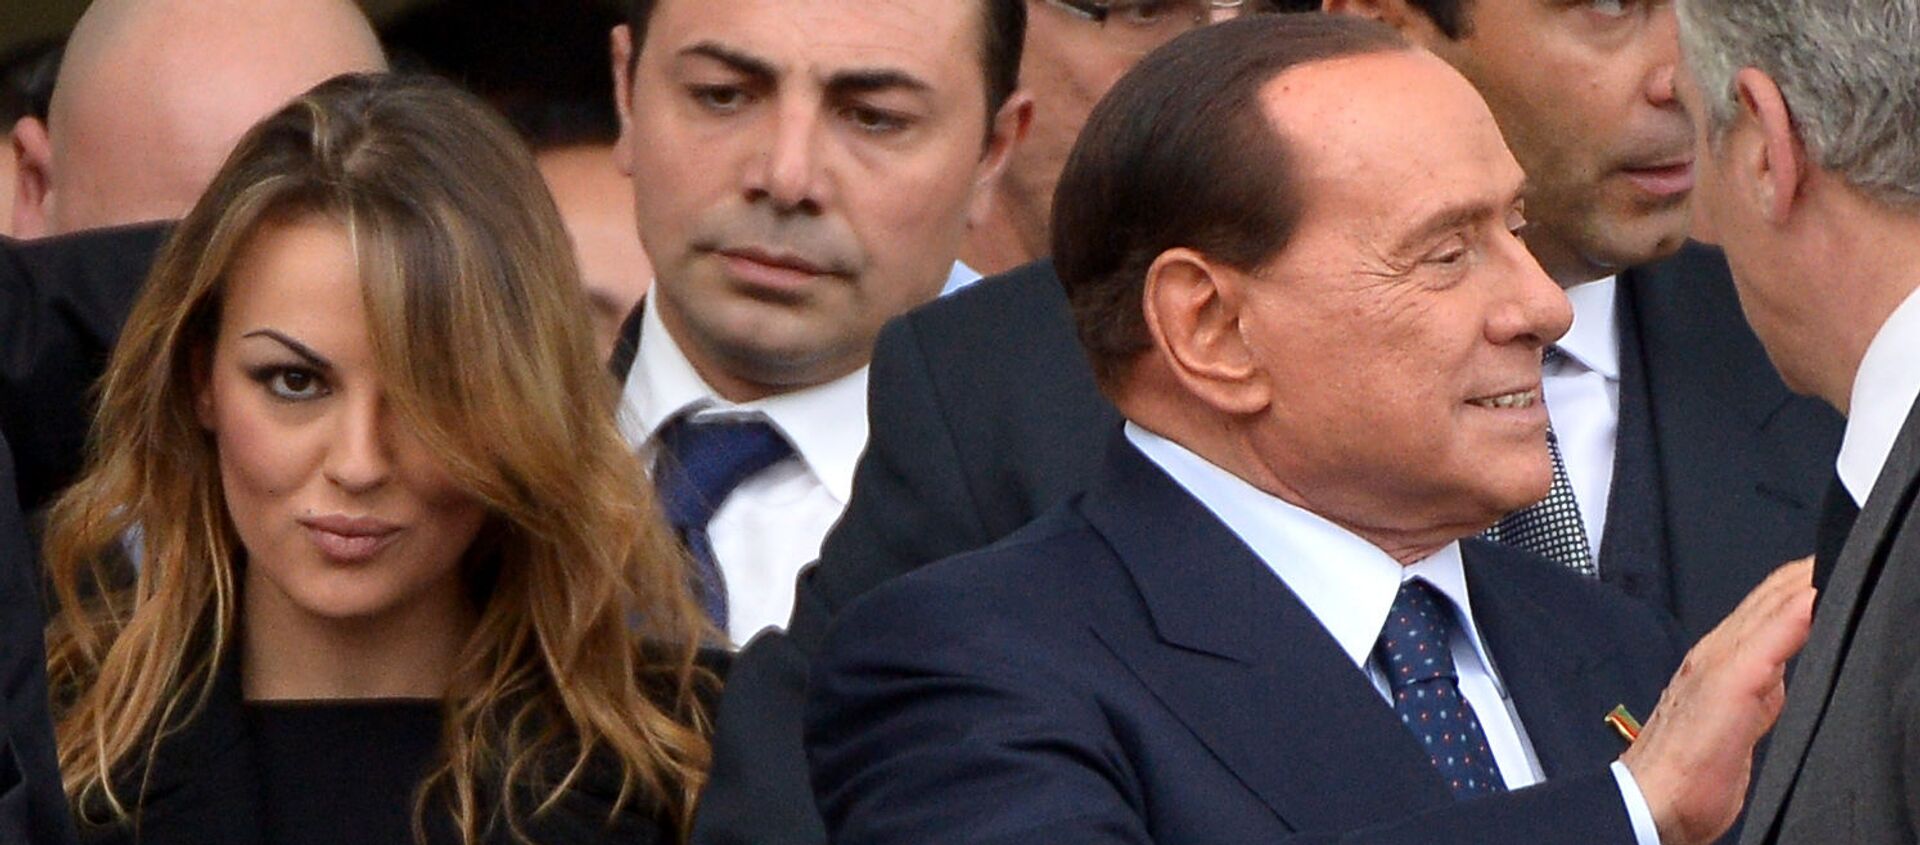 İtalya'nın eski başbakanı Silvio Berlusconi,12 yıldır birlikte olduğu sevgilisi Francesca Pascale'dan ayrıldı. - Sputnik Türkiye, 1920, 05.03.2020